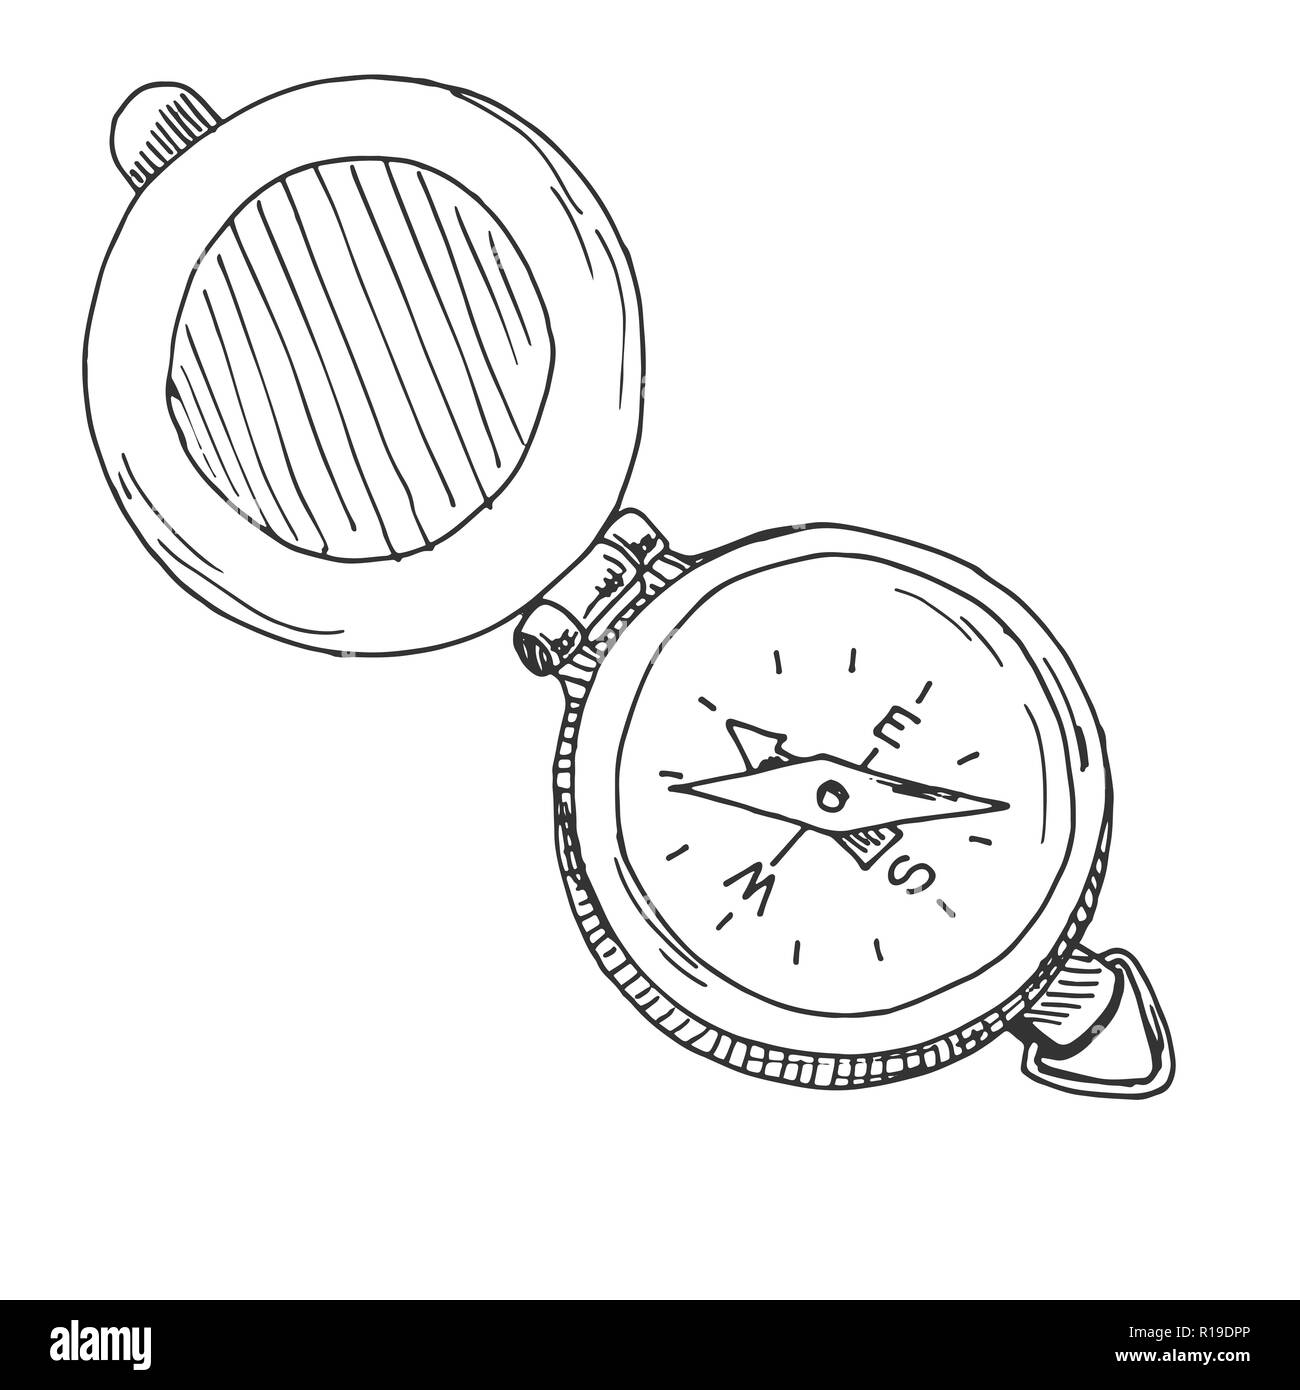 Skizze eines Kompass. Vector Illustration. Auf weissem Hintergrund  Stock-Vektorgrafik - Alamy